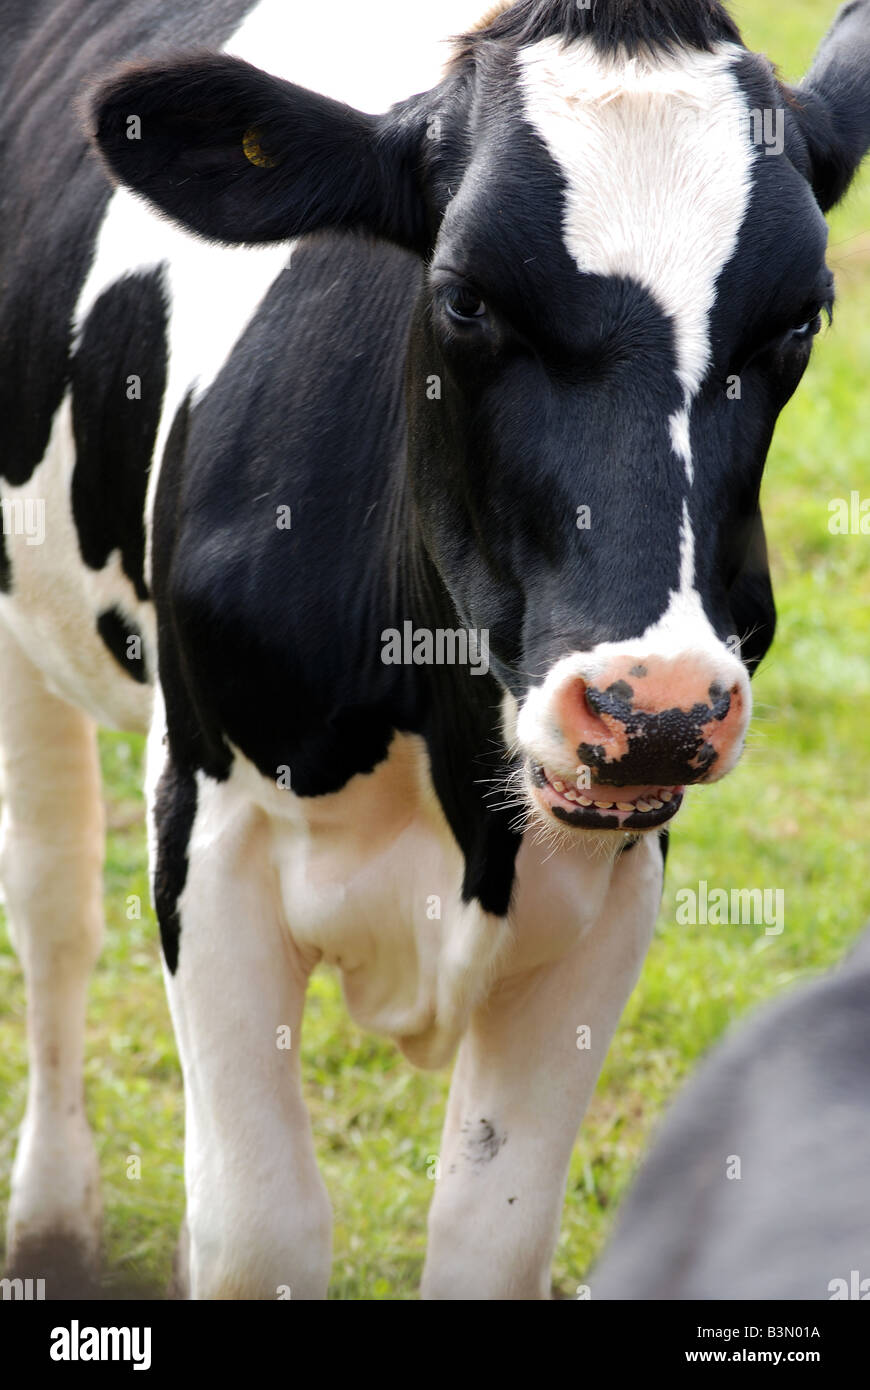 Giovane vacca la masticazione o cudd mooing o è in procinto di mordere gli altri retro!! Foto Stock